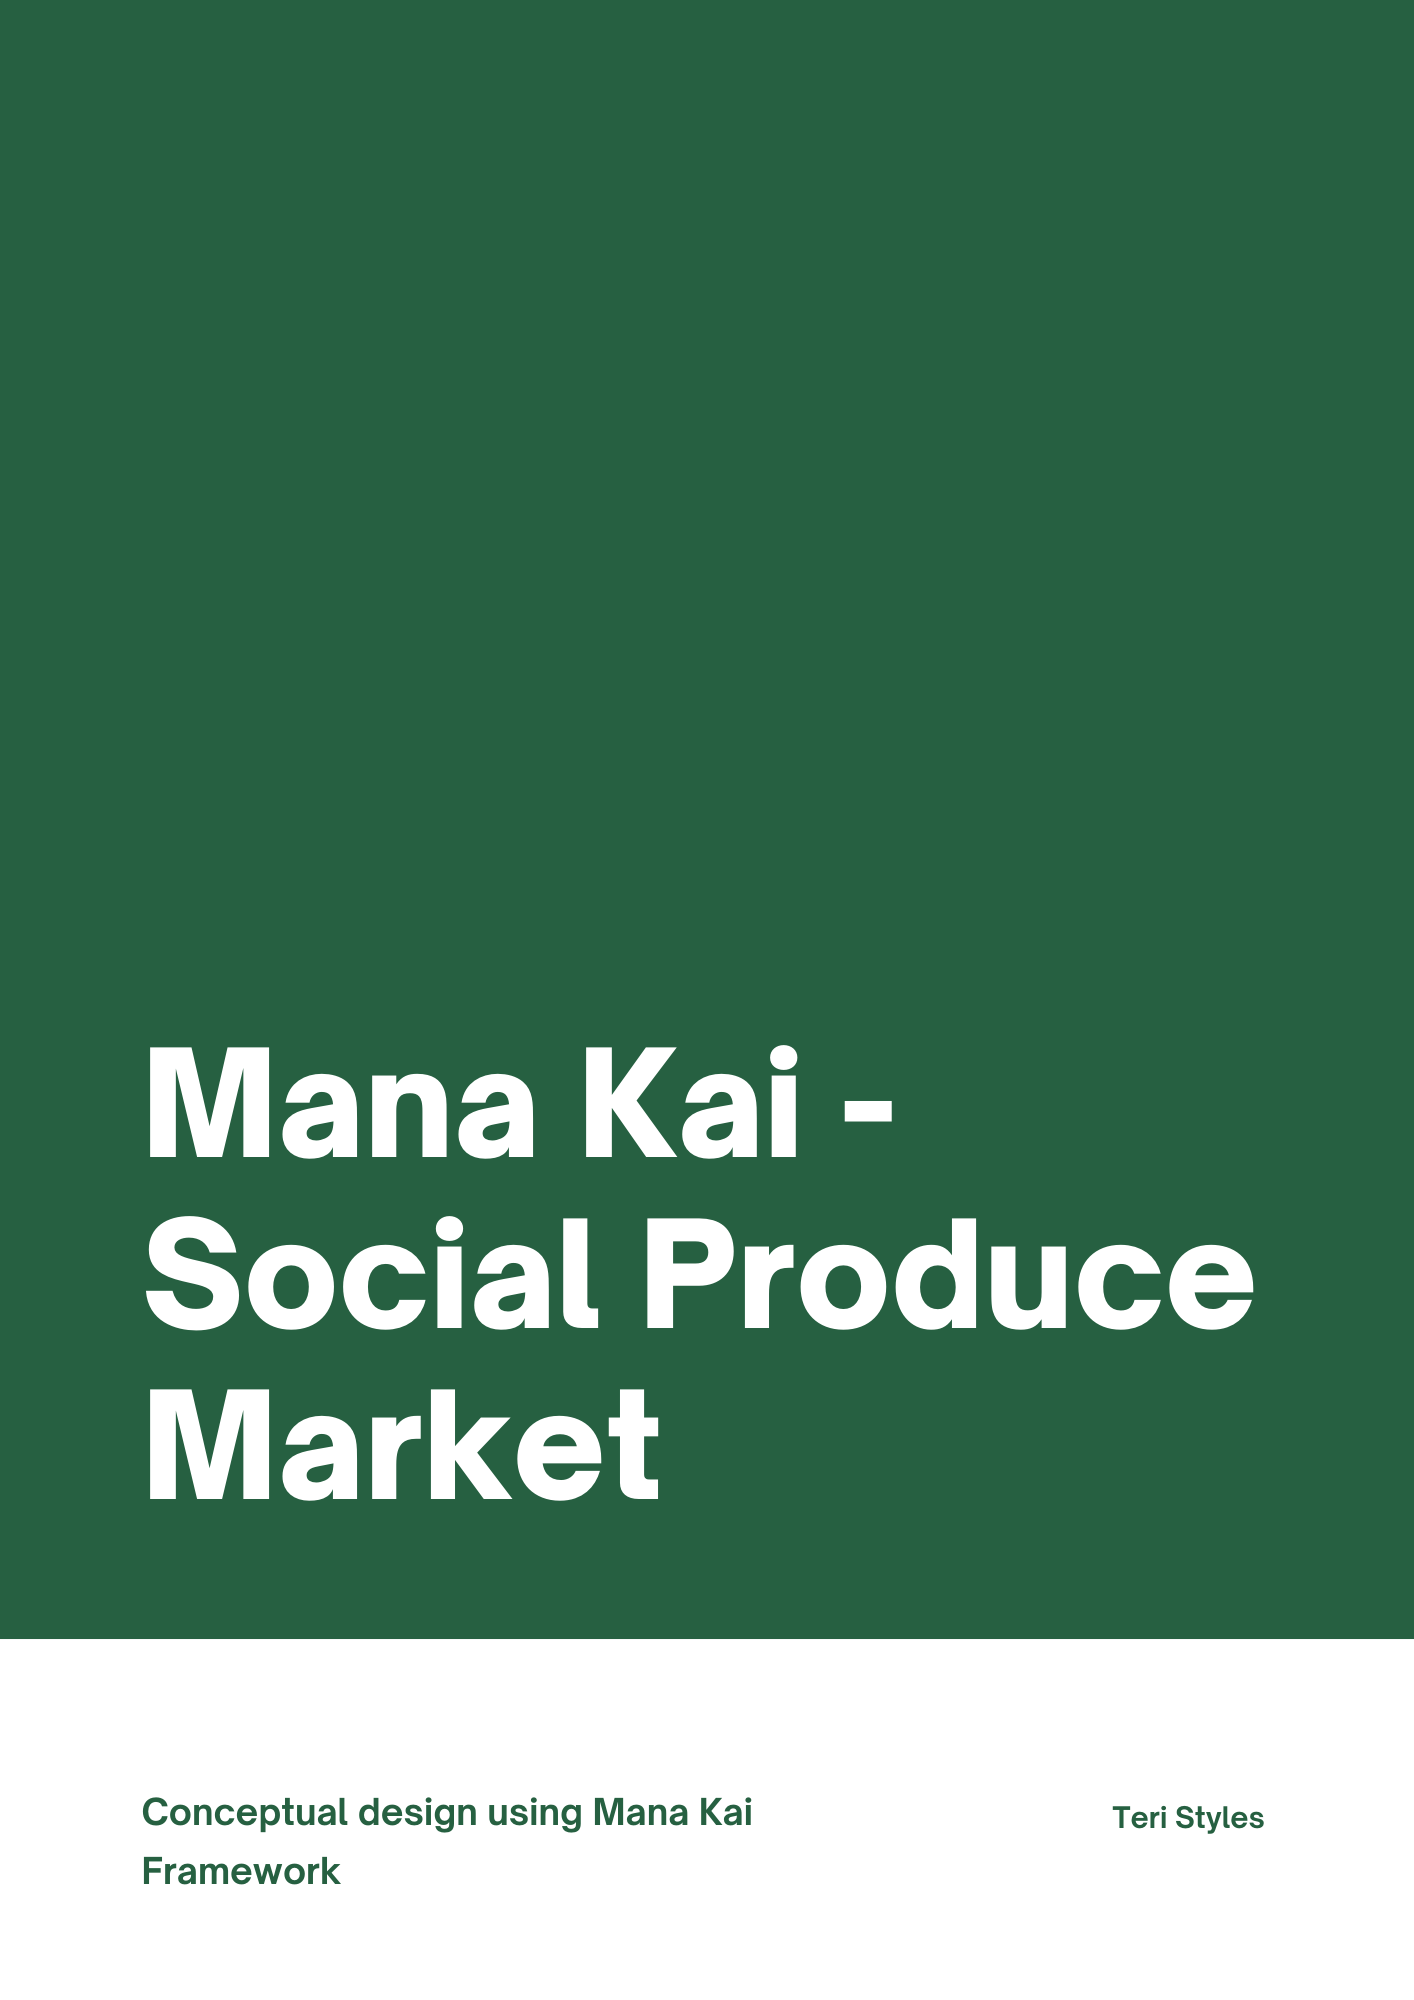 ​A Social Produce Market by Teri Styles #ManaKai ​